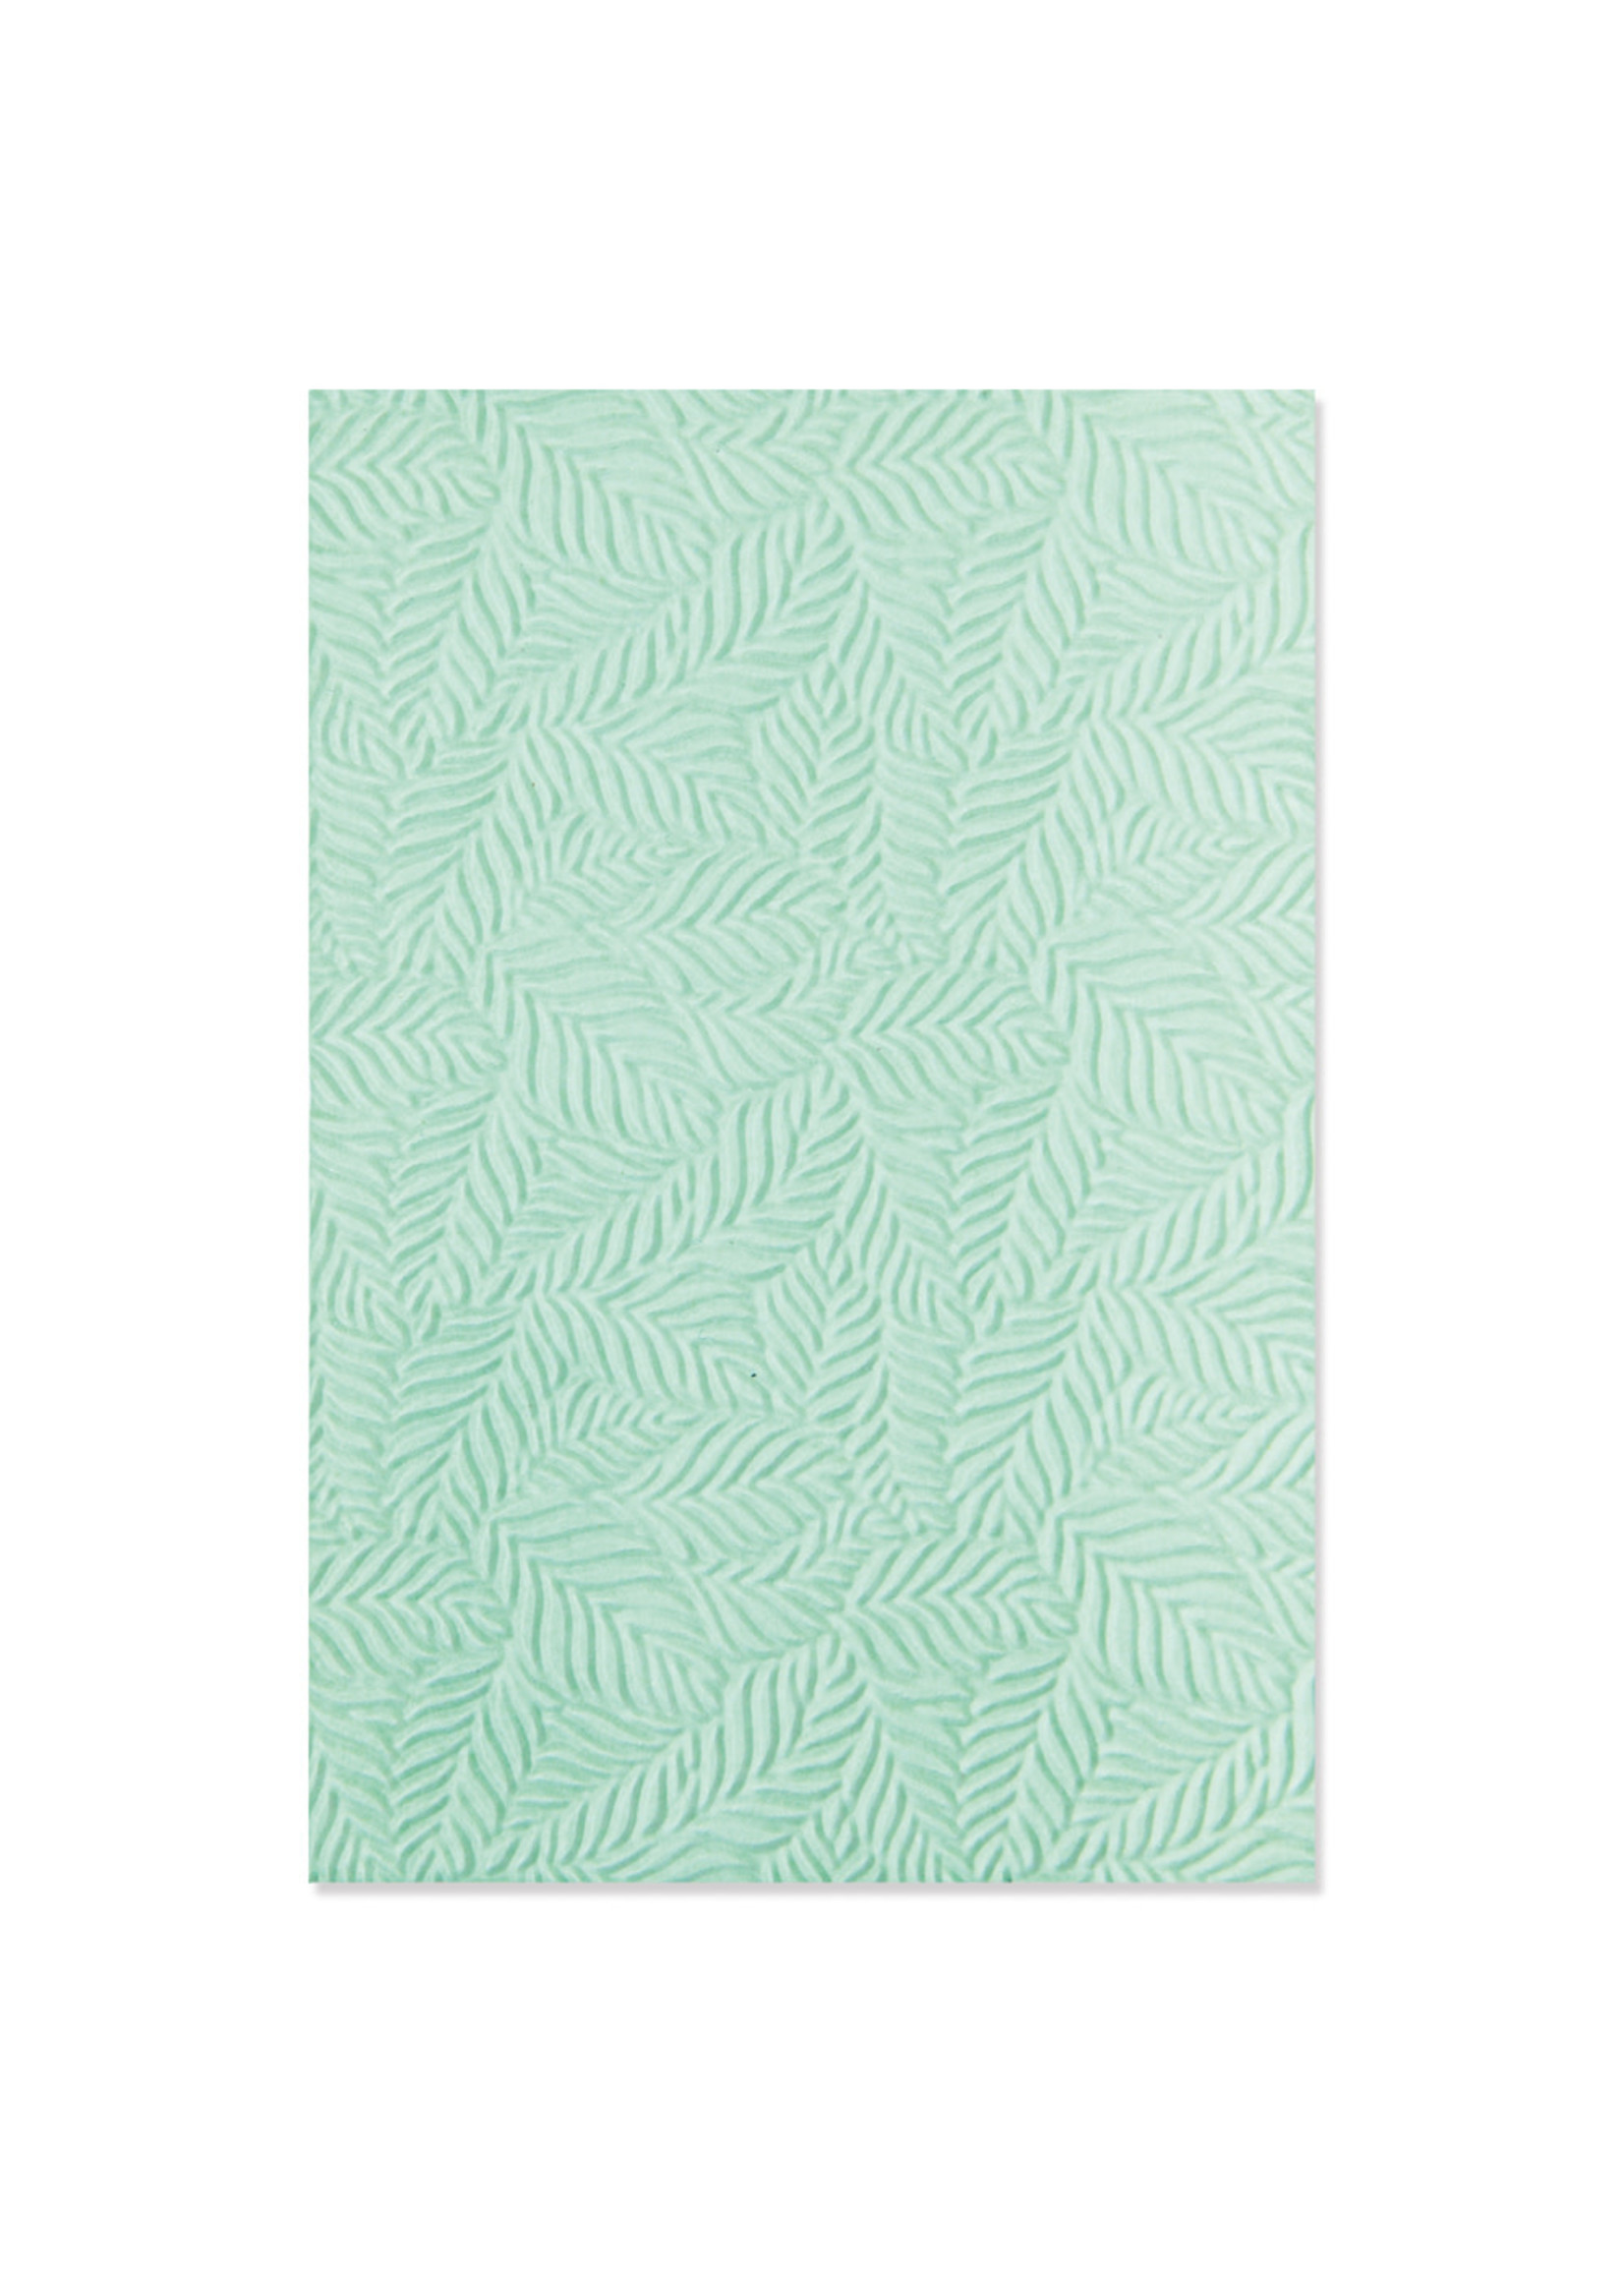 Sizzix Leaf Pattern 3-D Embossing Folder